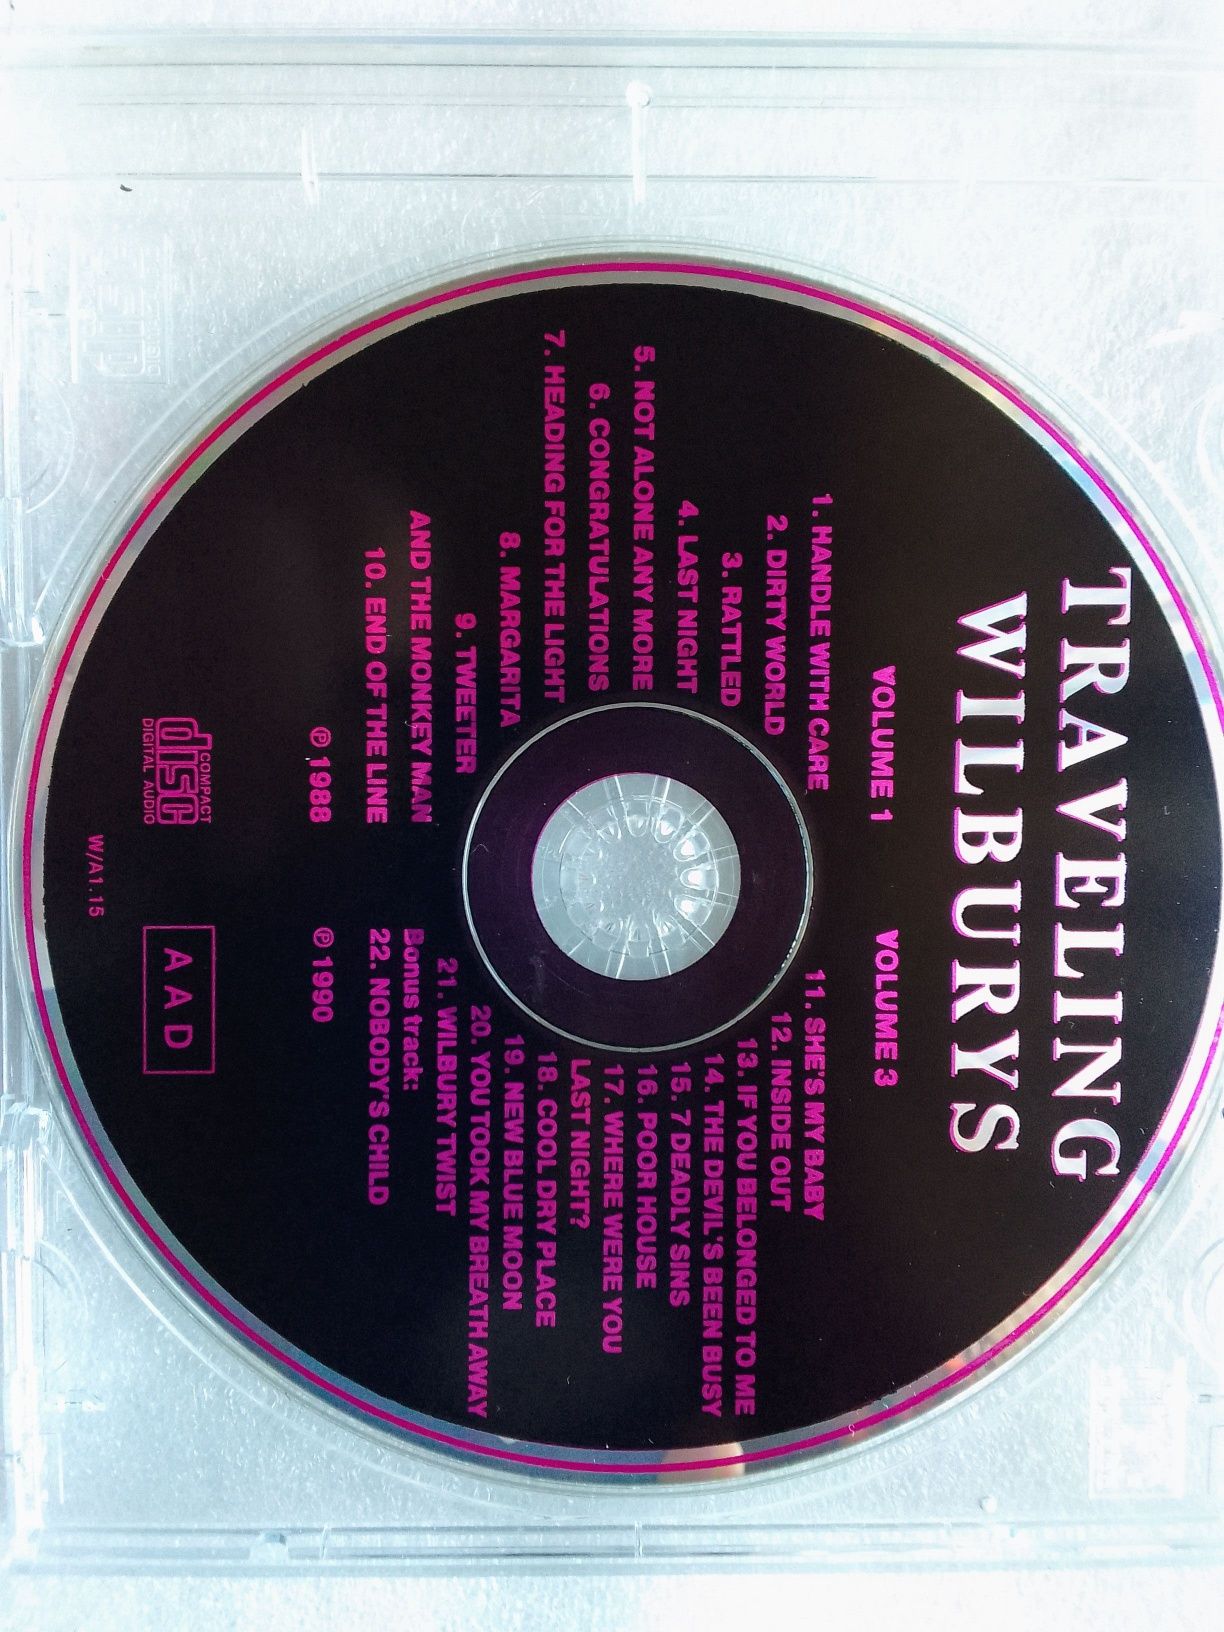 Traveling Wilburys. CD Audio.